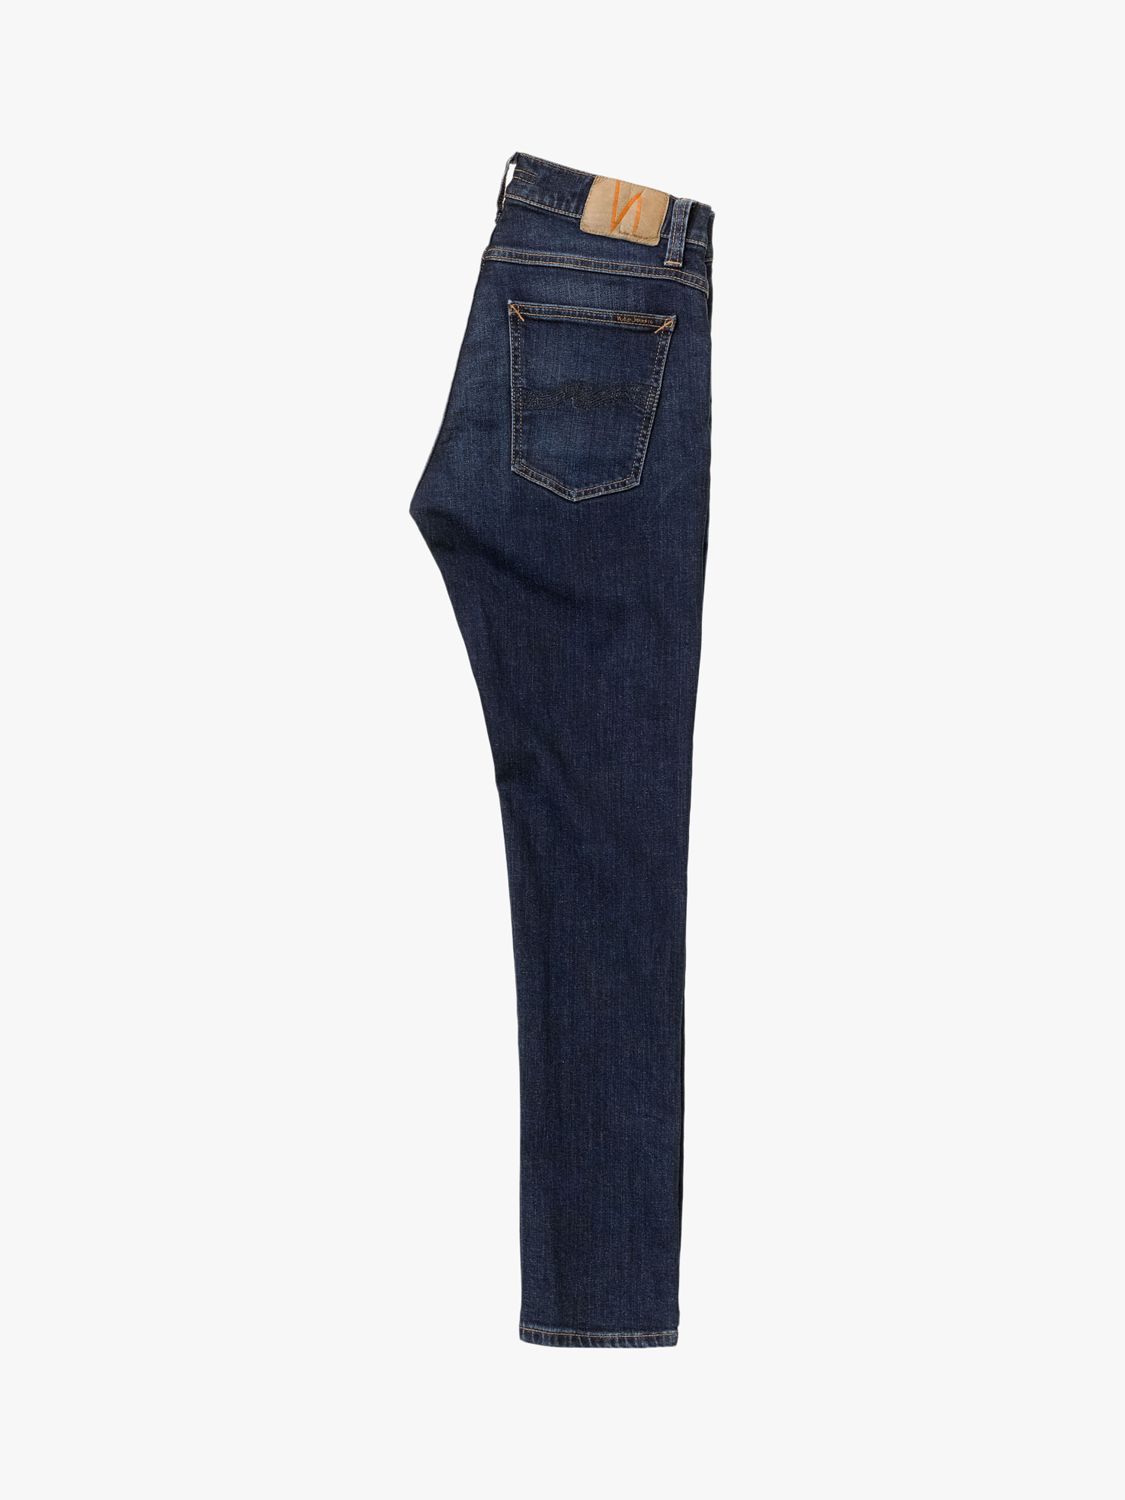 Nudie Jeans Slim Tight Terry Jeans, Dark Steel, 30S